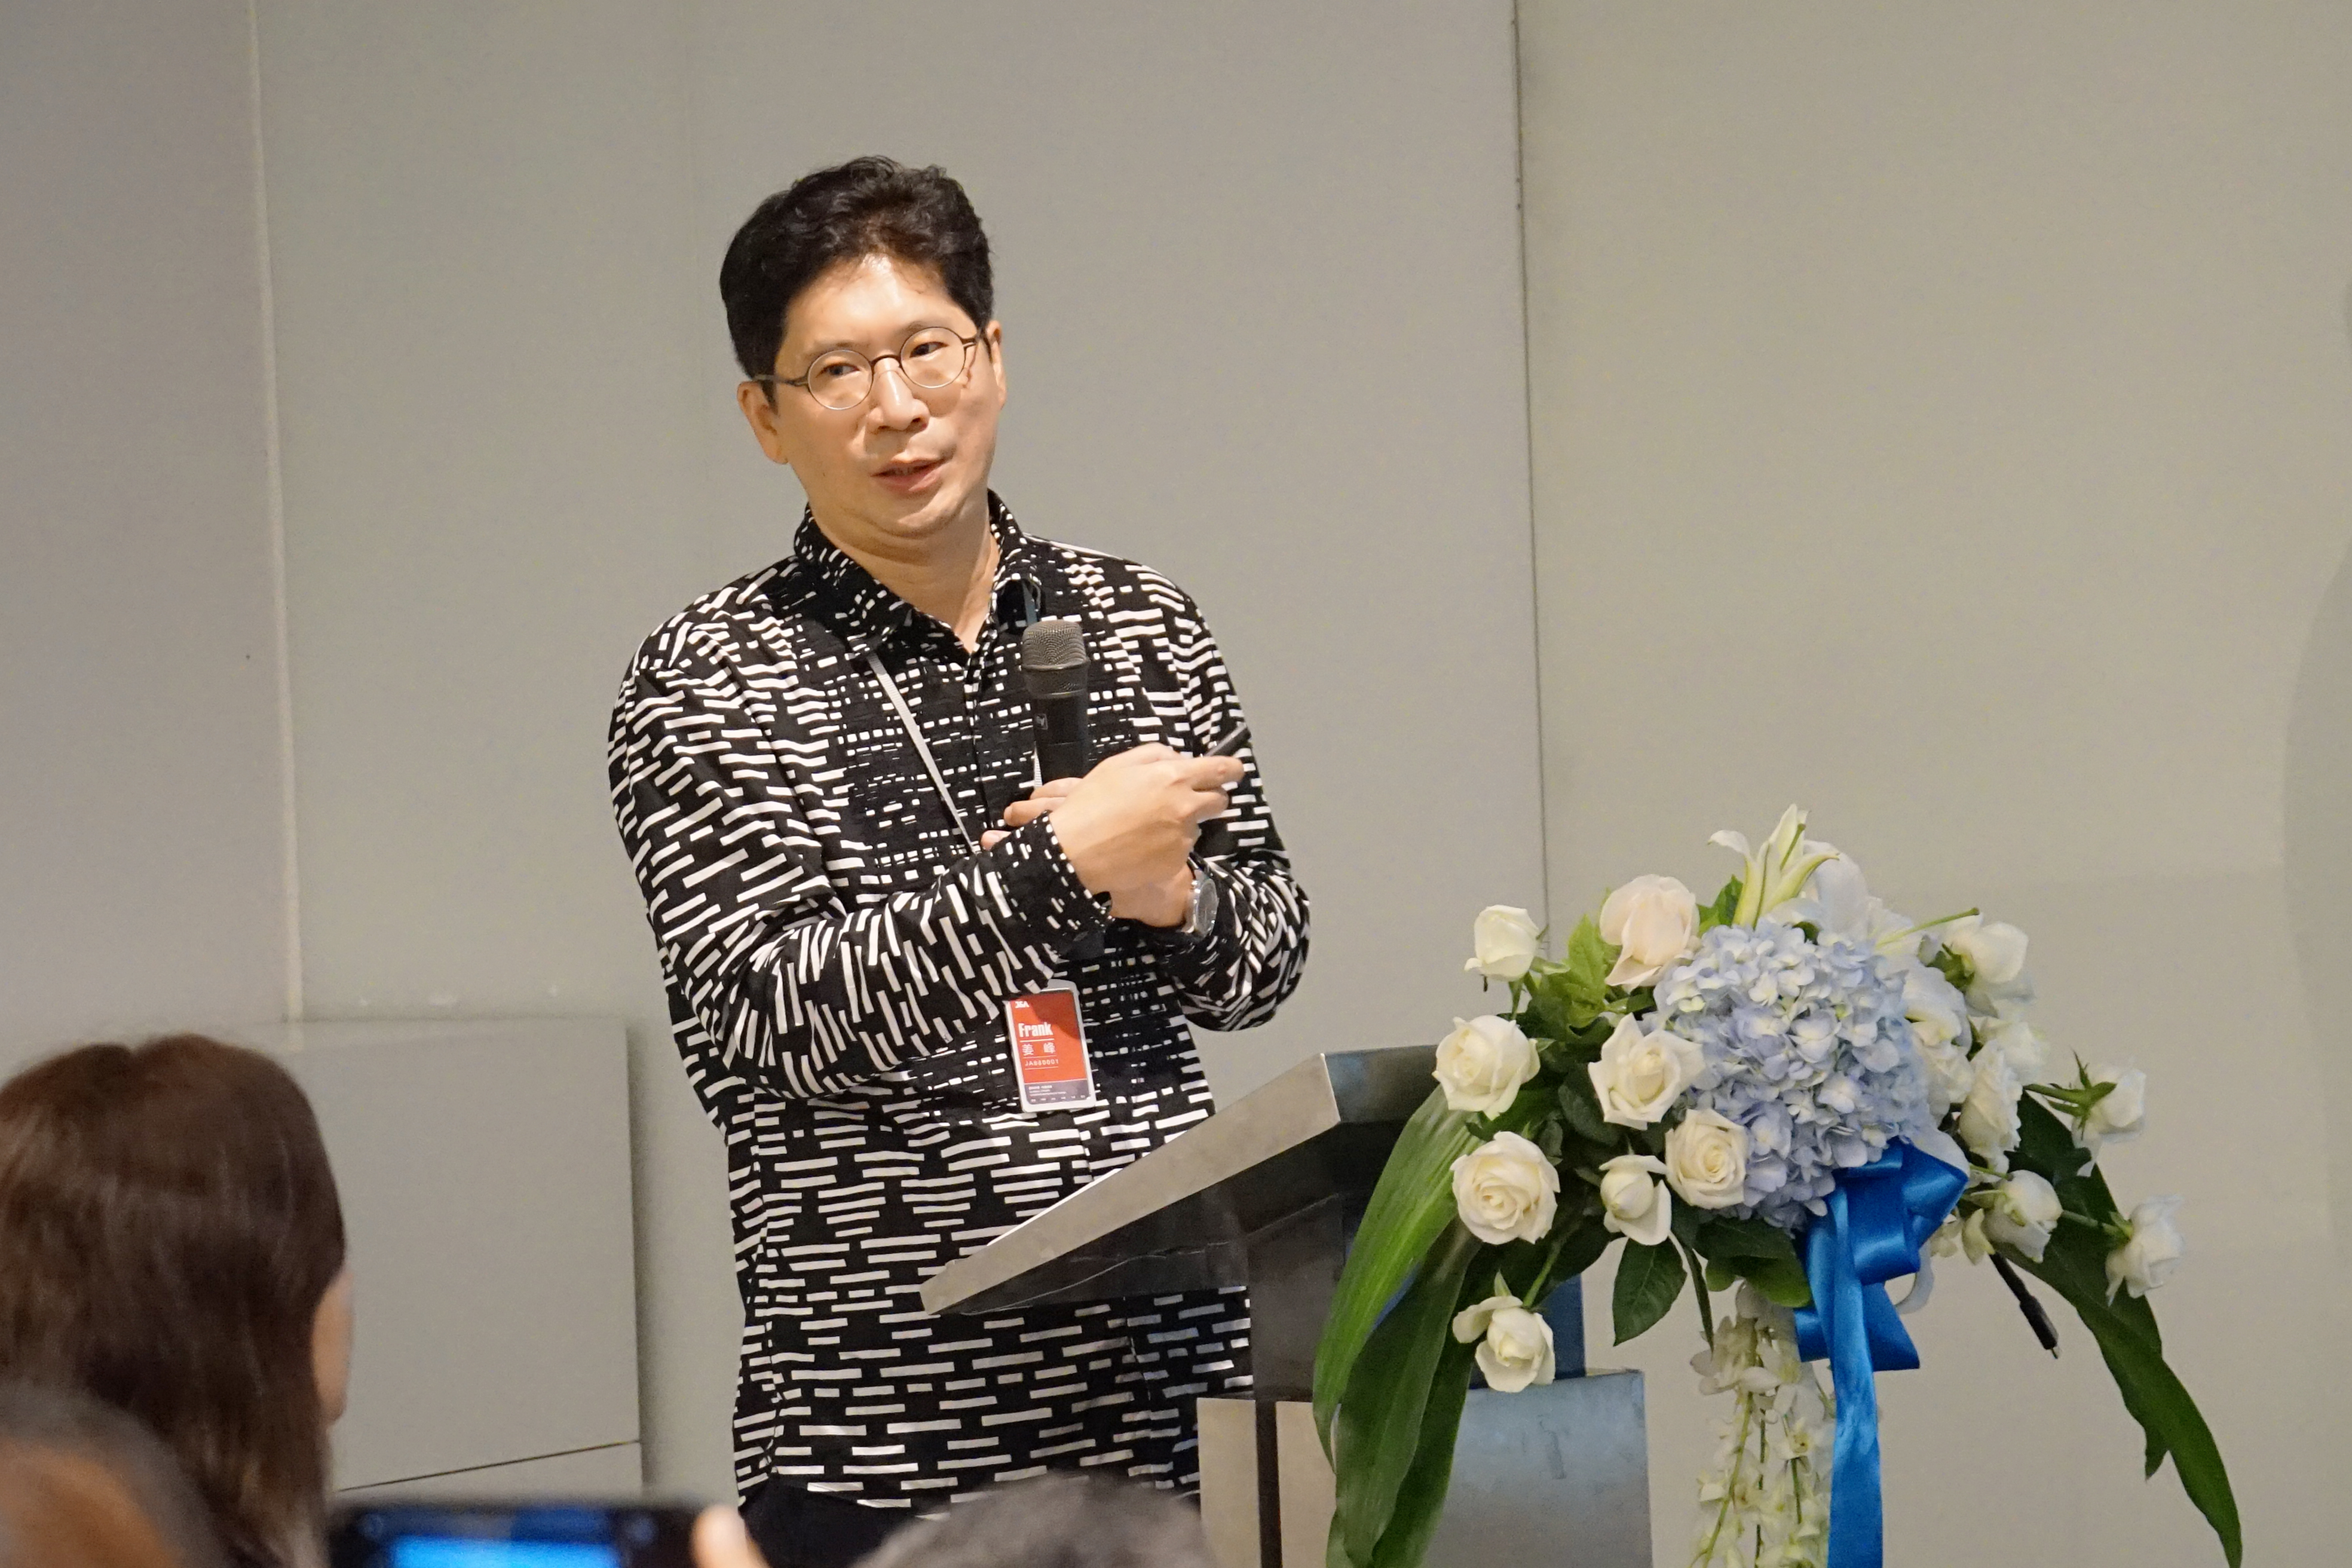 J&A杰恩设计董事长、总设计师姜峰先生做了题为“无界之界”的演讲